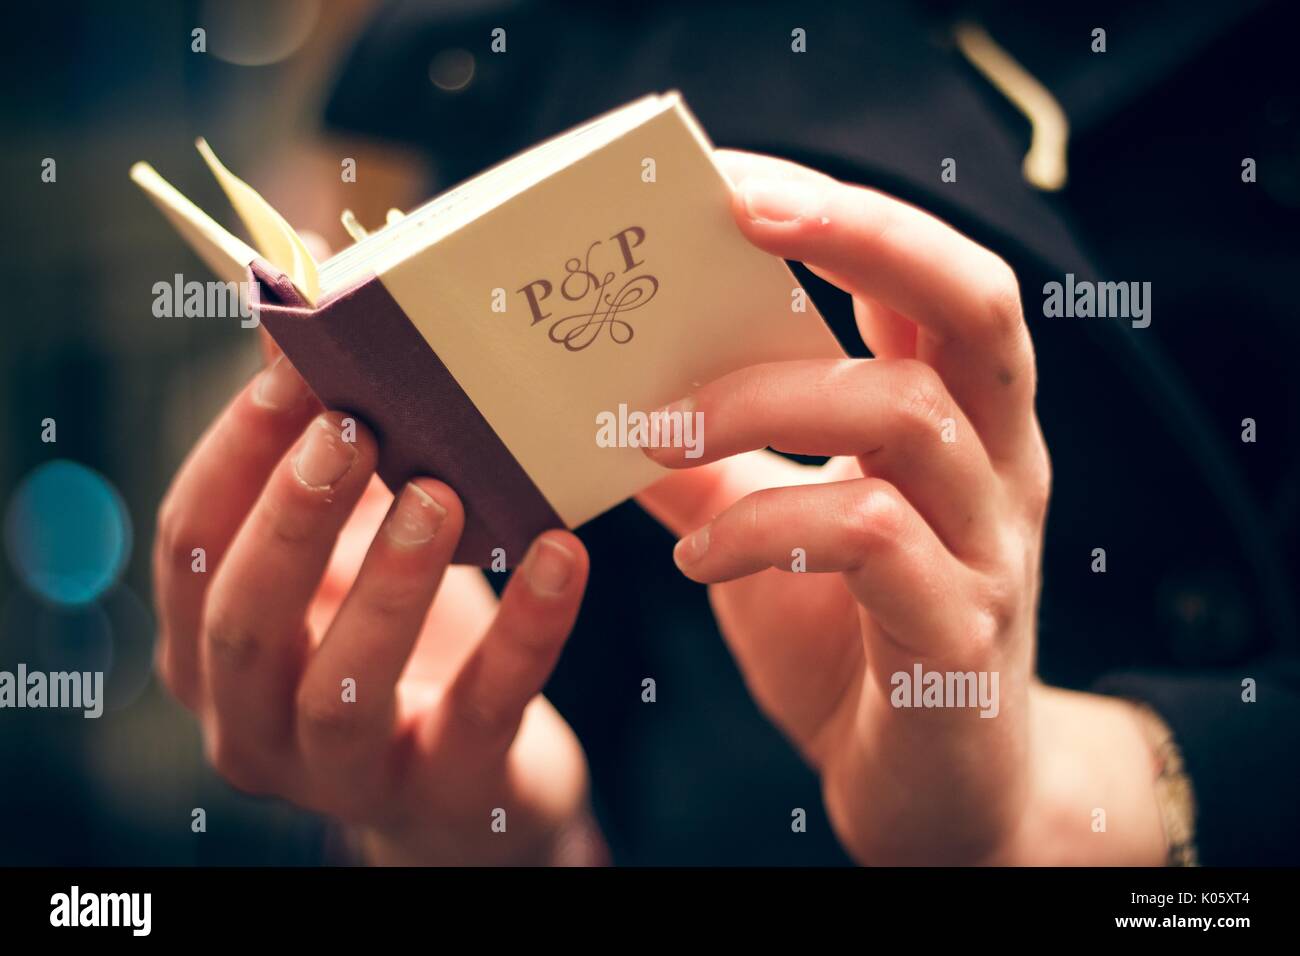 Deux mains tenant un petit livre ouvert avec un couvercle de couleur crème et un dos marron, avec les lettres 'P et P', 2016. Banque D'Images